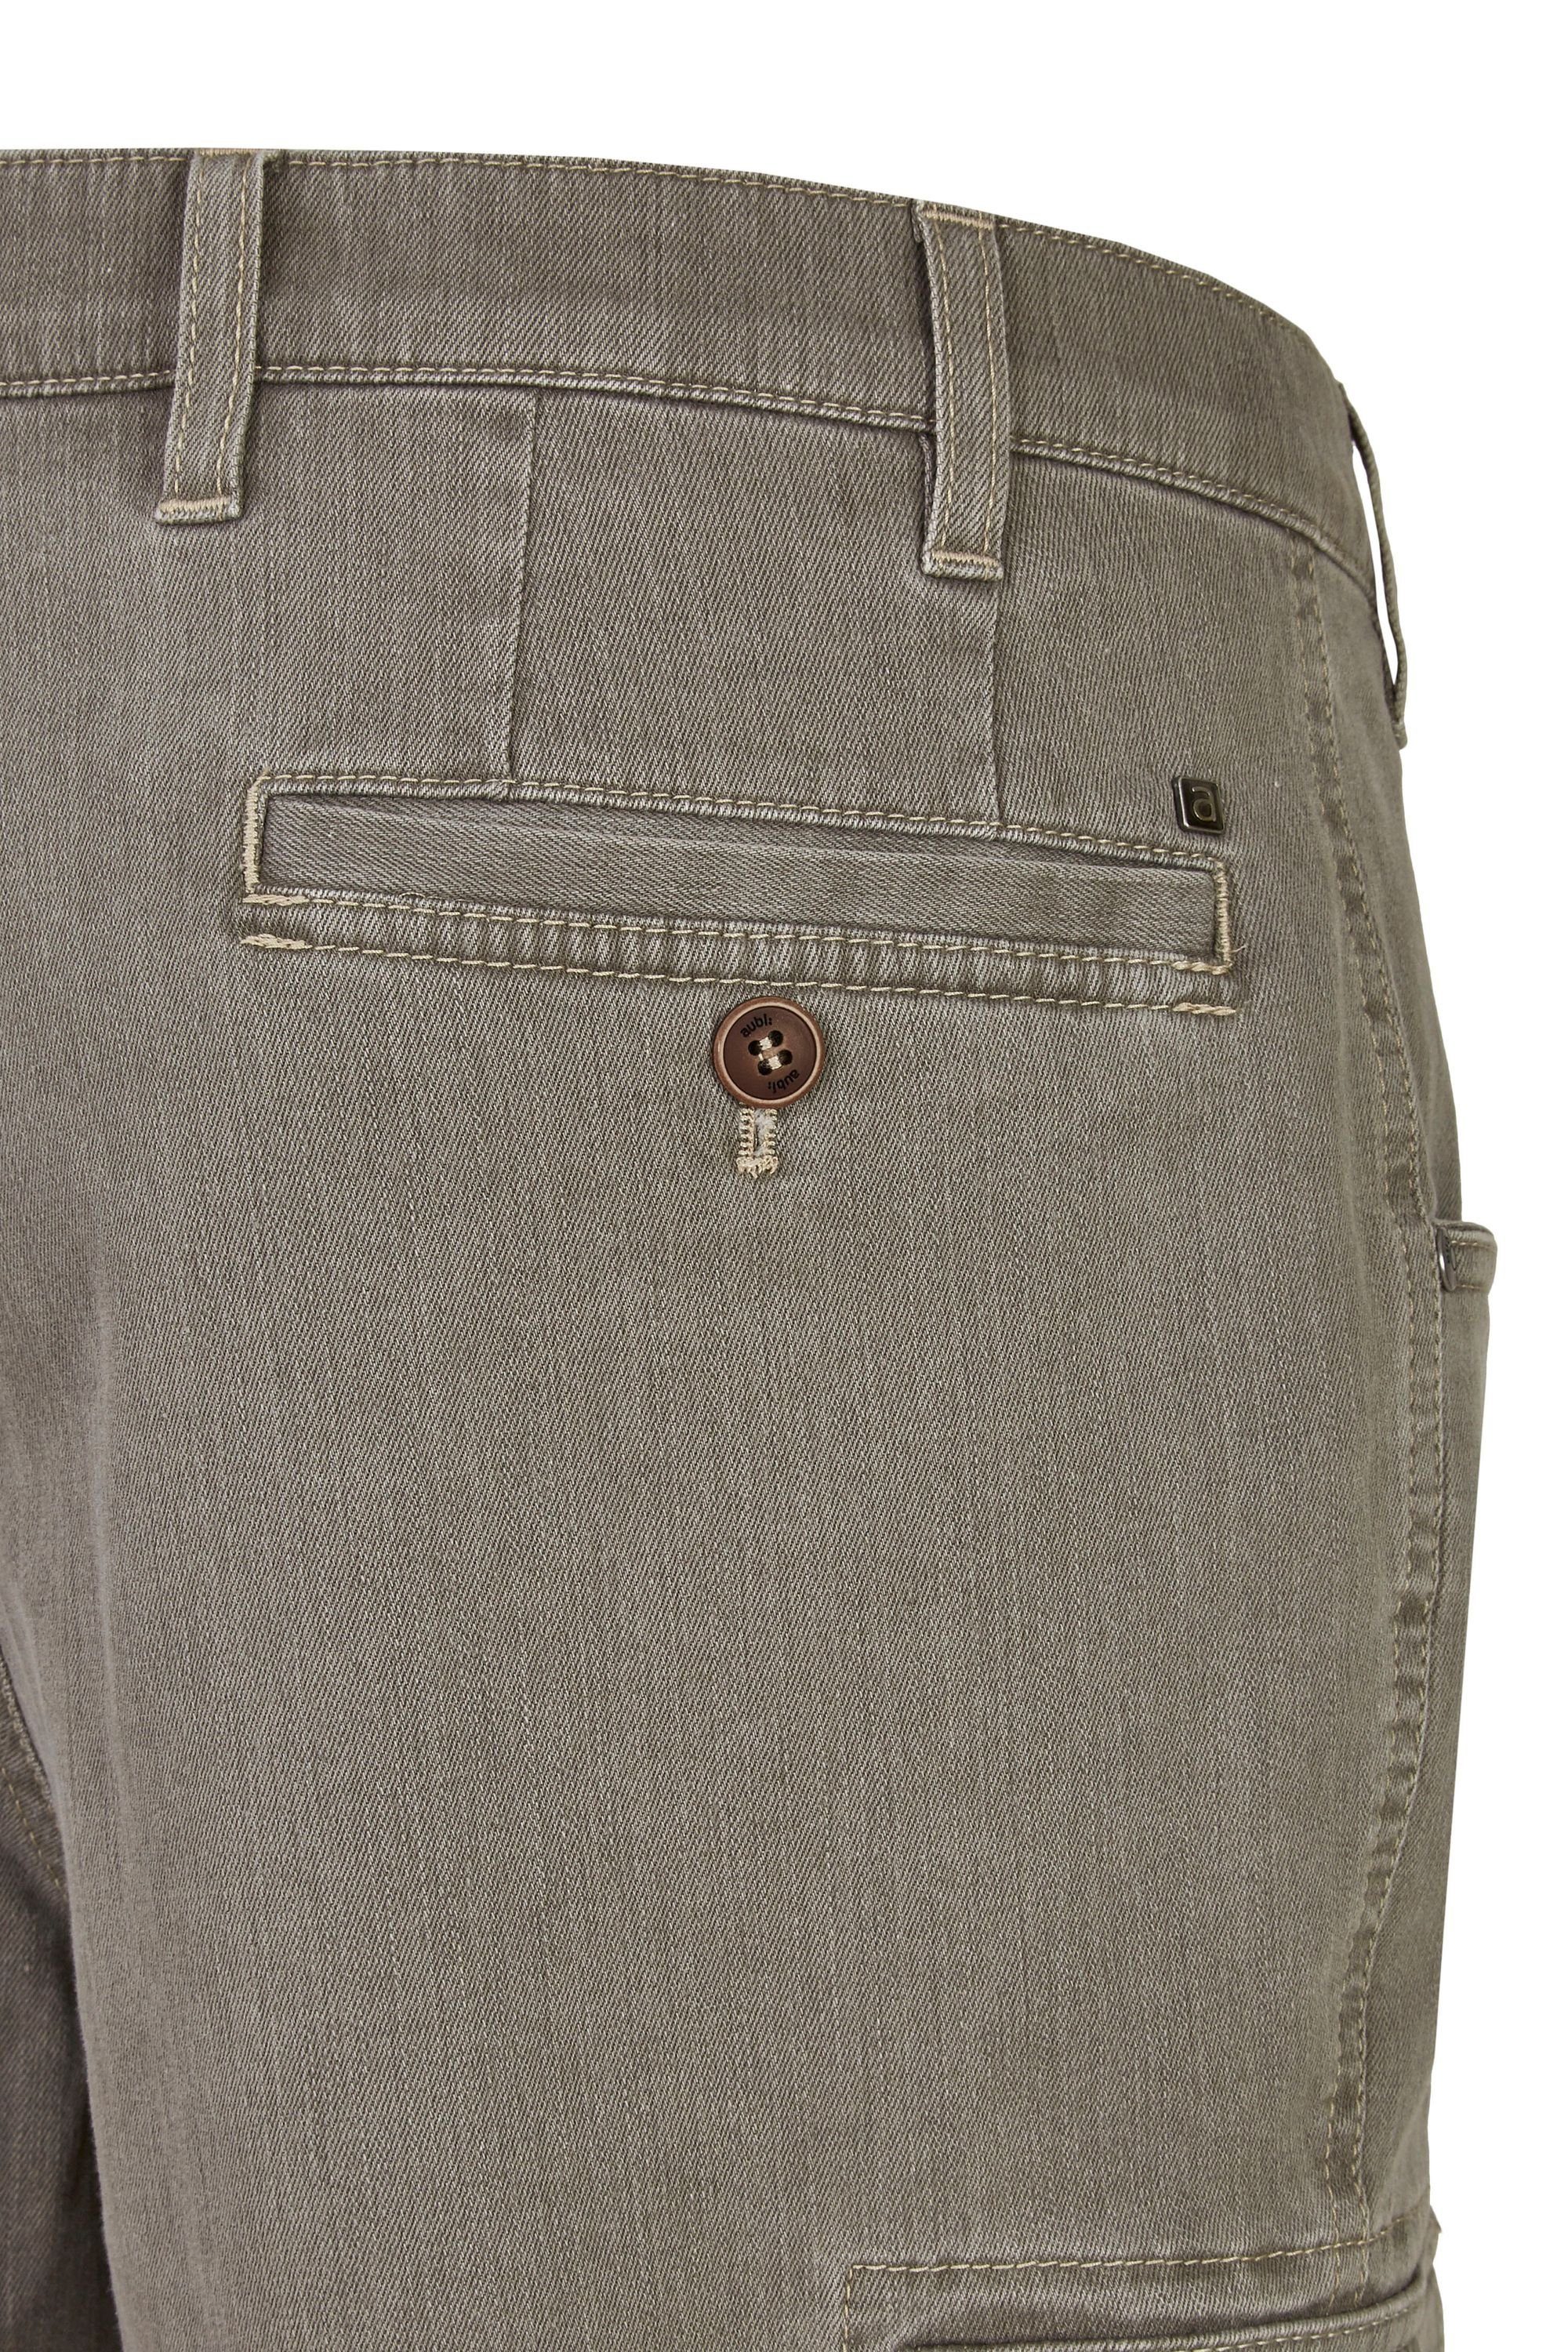 aubi: Bequeme Jeans aubi Perfect Baumwolle aus 616 olive Fit Modell Herren Flex Shorts High (24) Jeans Cargo Stretch Sommer